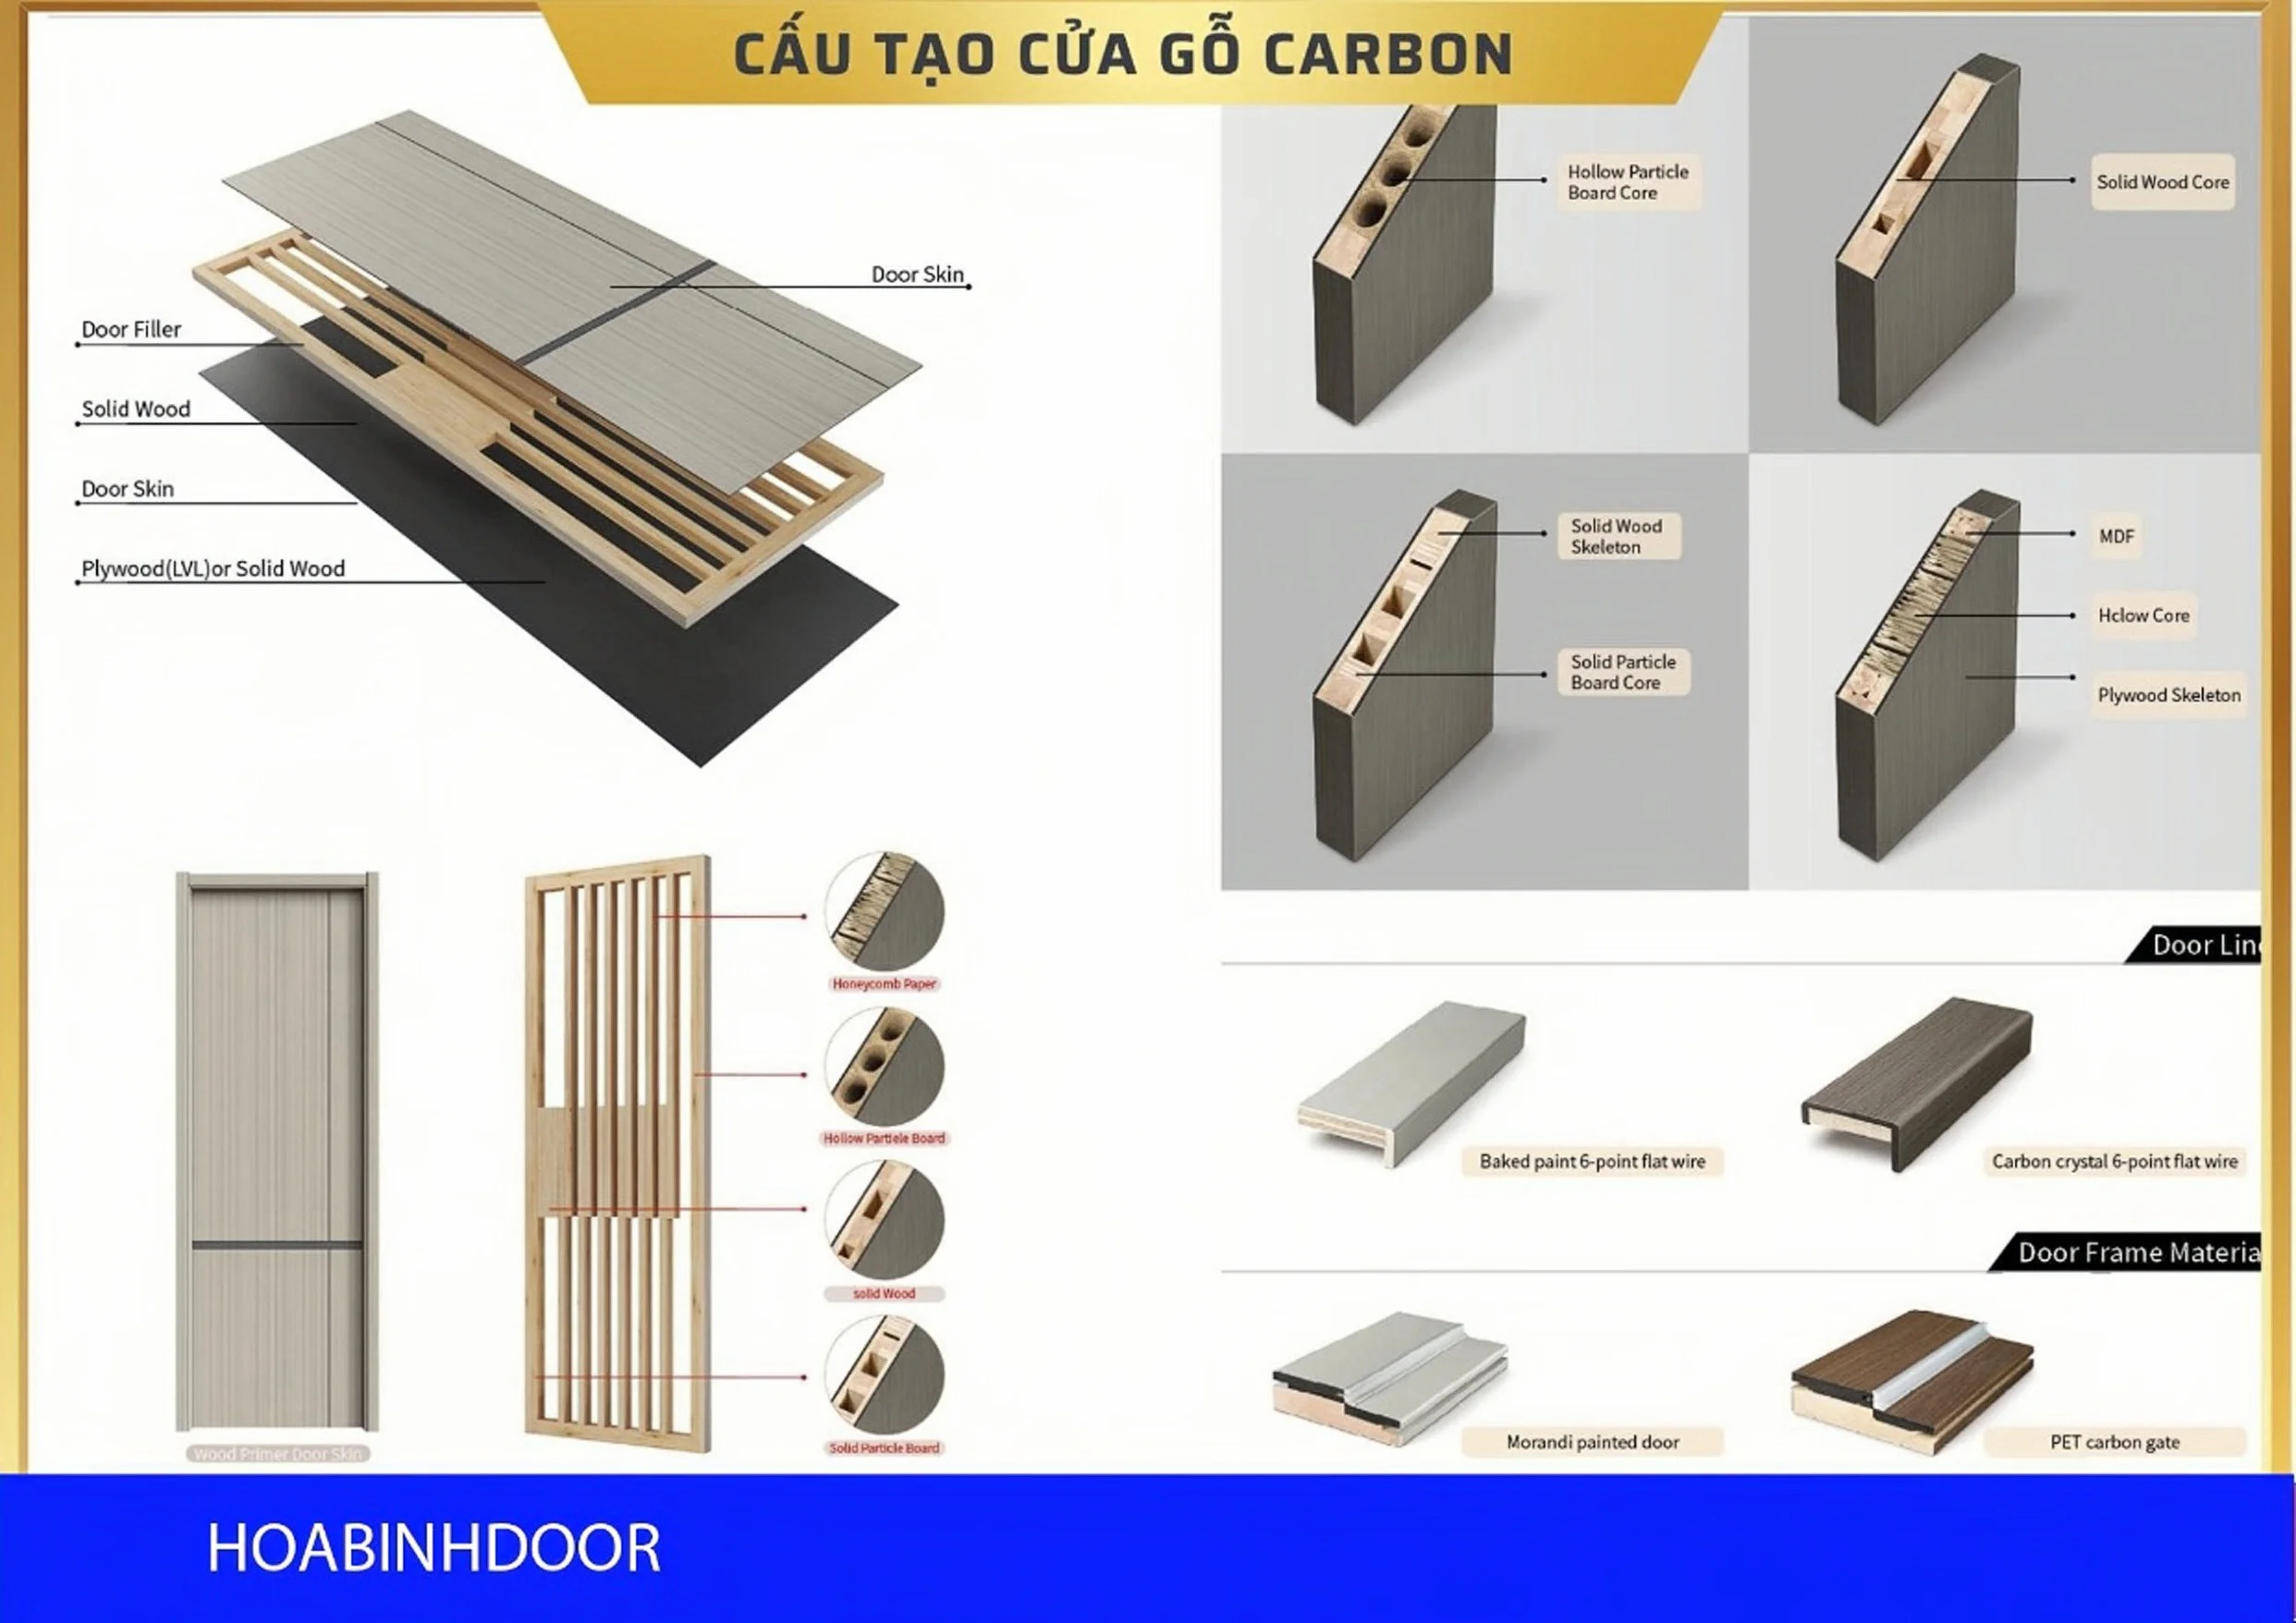 Vât liệu xây dựng: Cửa gỗ Carbon tại Đồng Nai - Cửa gỗ đẹp giá rẻ Z5331032790072_40a745ab7d0b97938c17b7496774517b